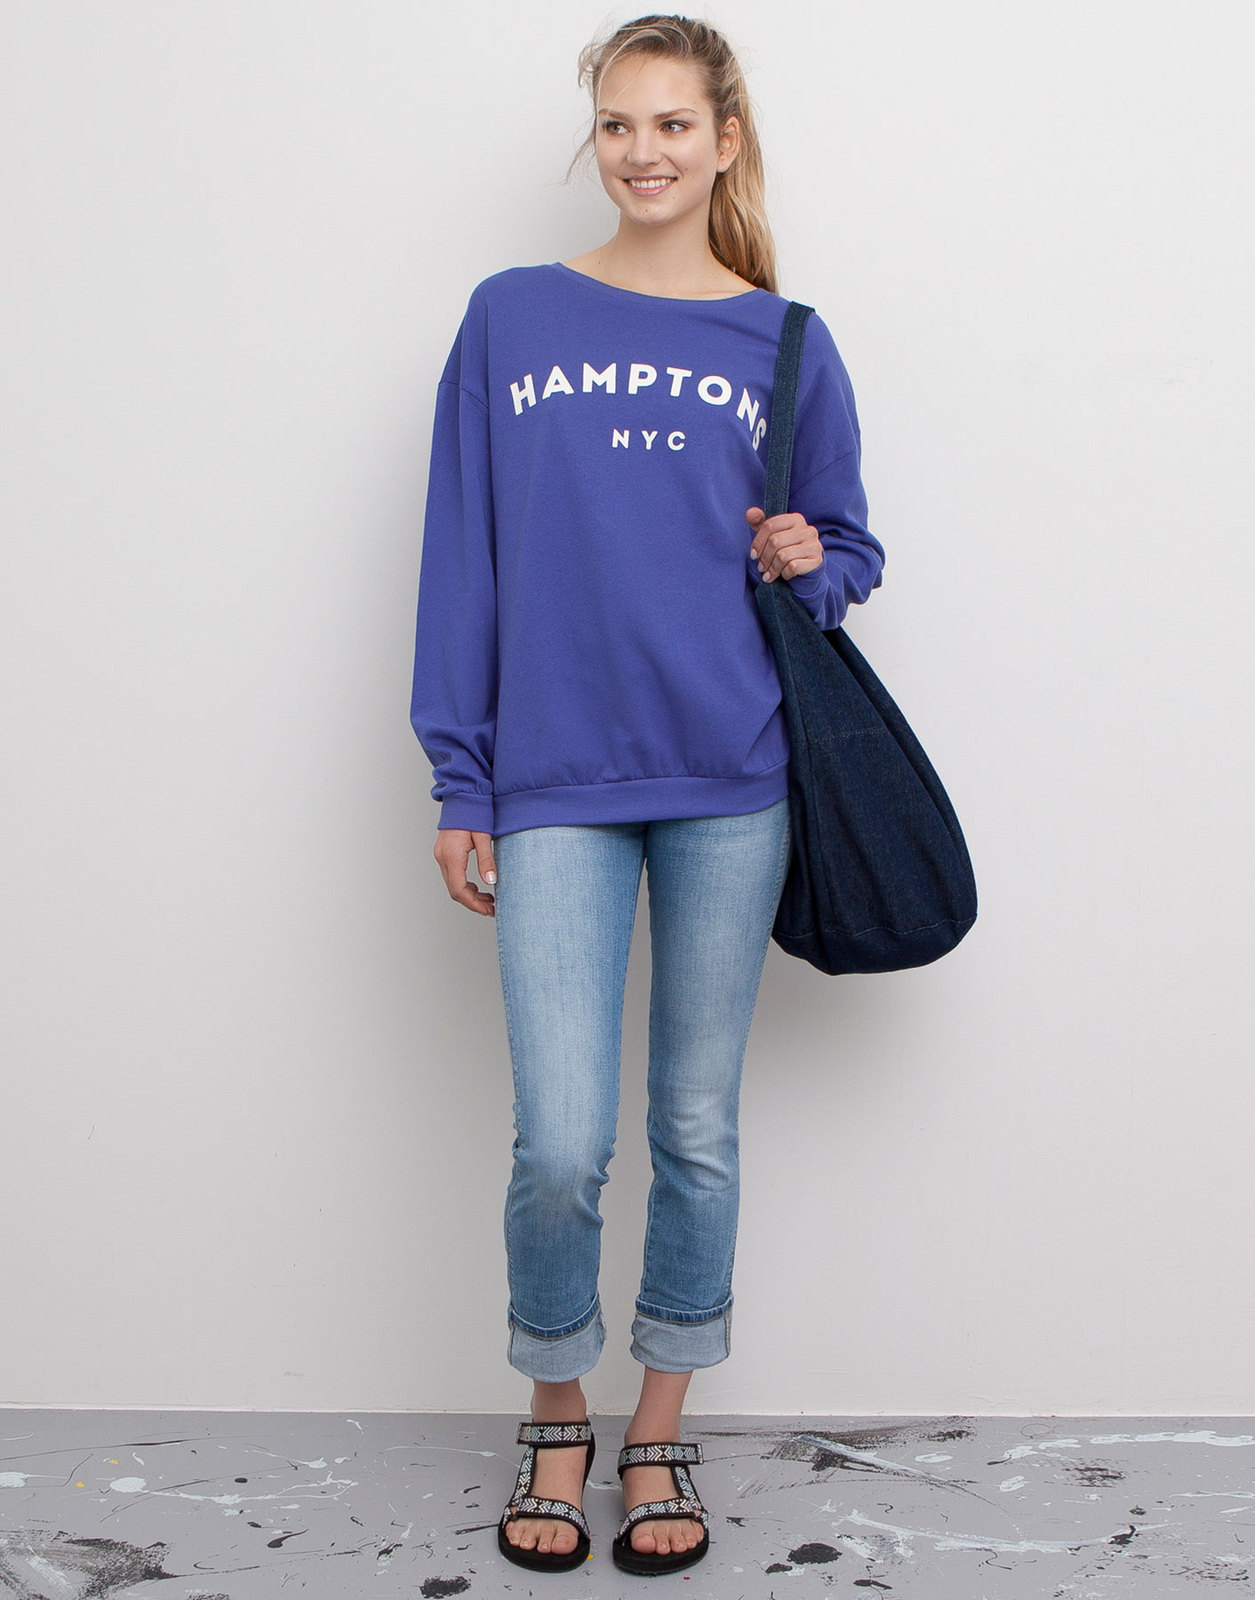 Pull and Bear pasztellkék Hamptons feliratos pulóver fotója